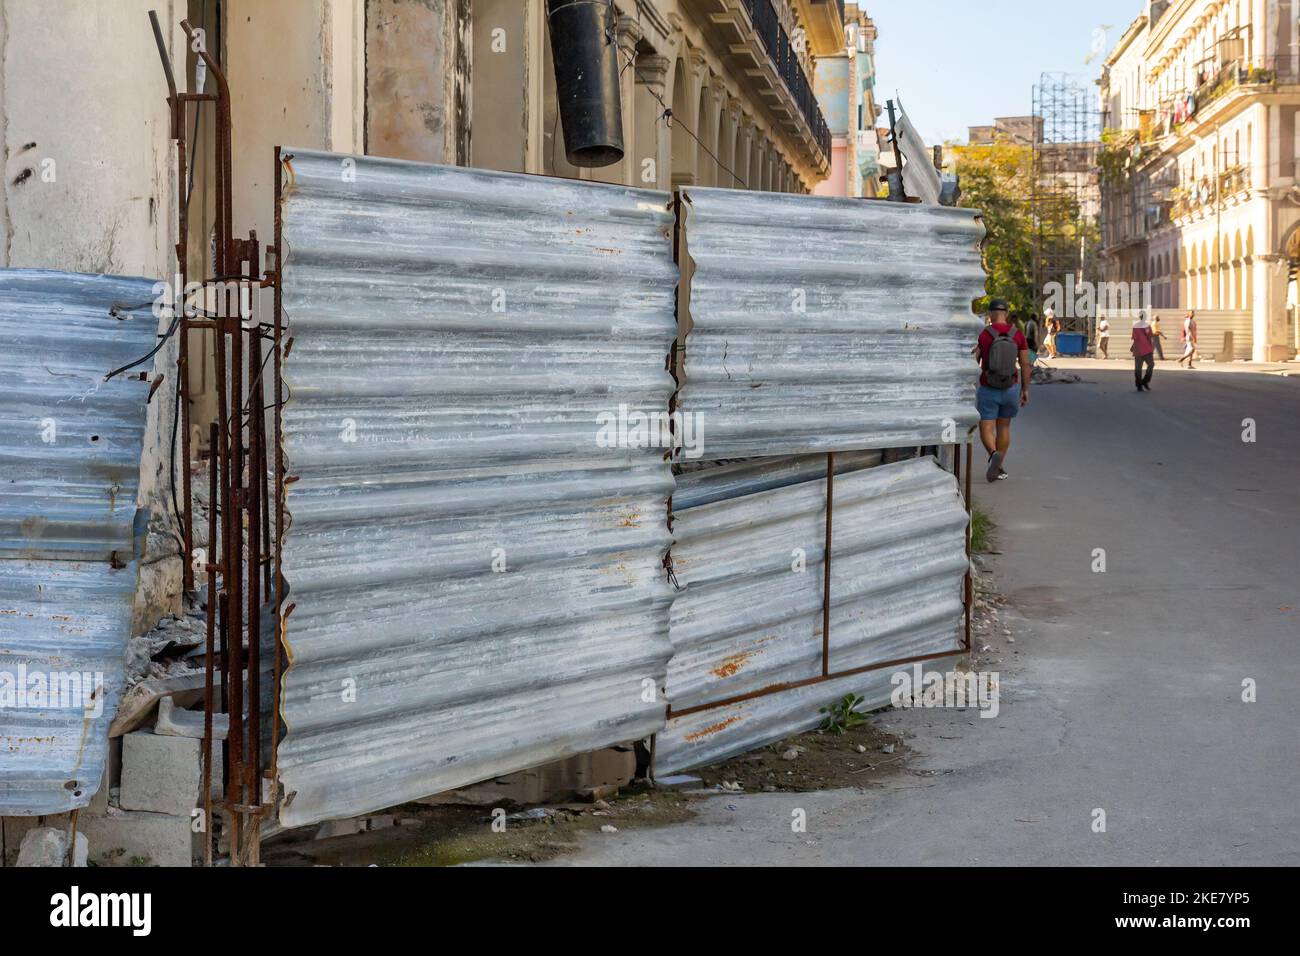 Une vieille clôture métallique en ruine protège un bâtiment en danger d'effondrement. Banque D'Images